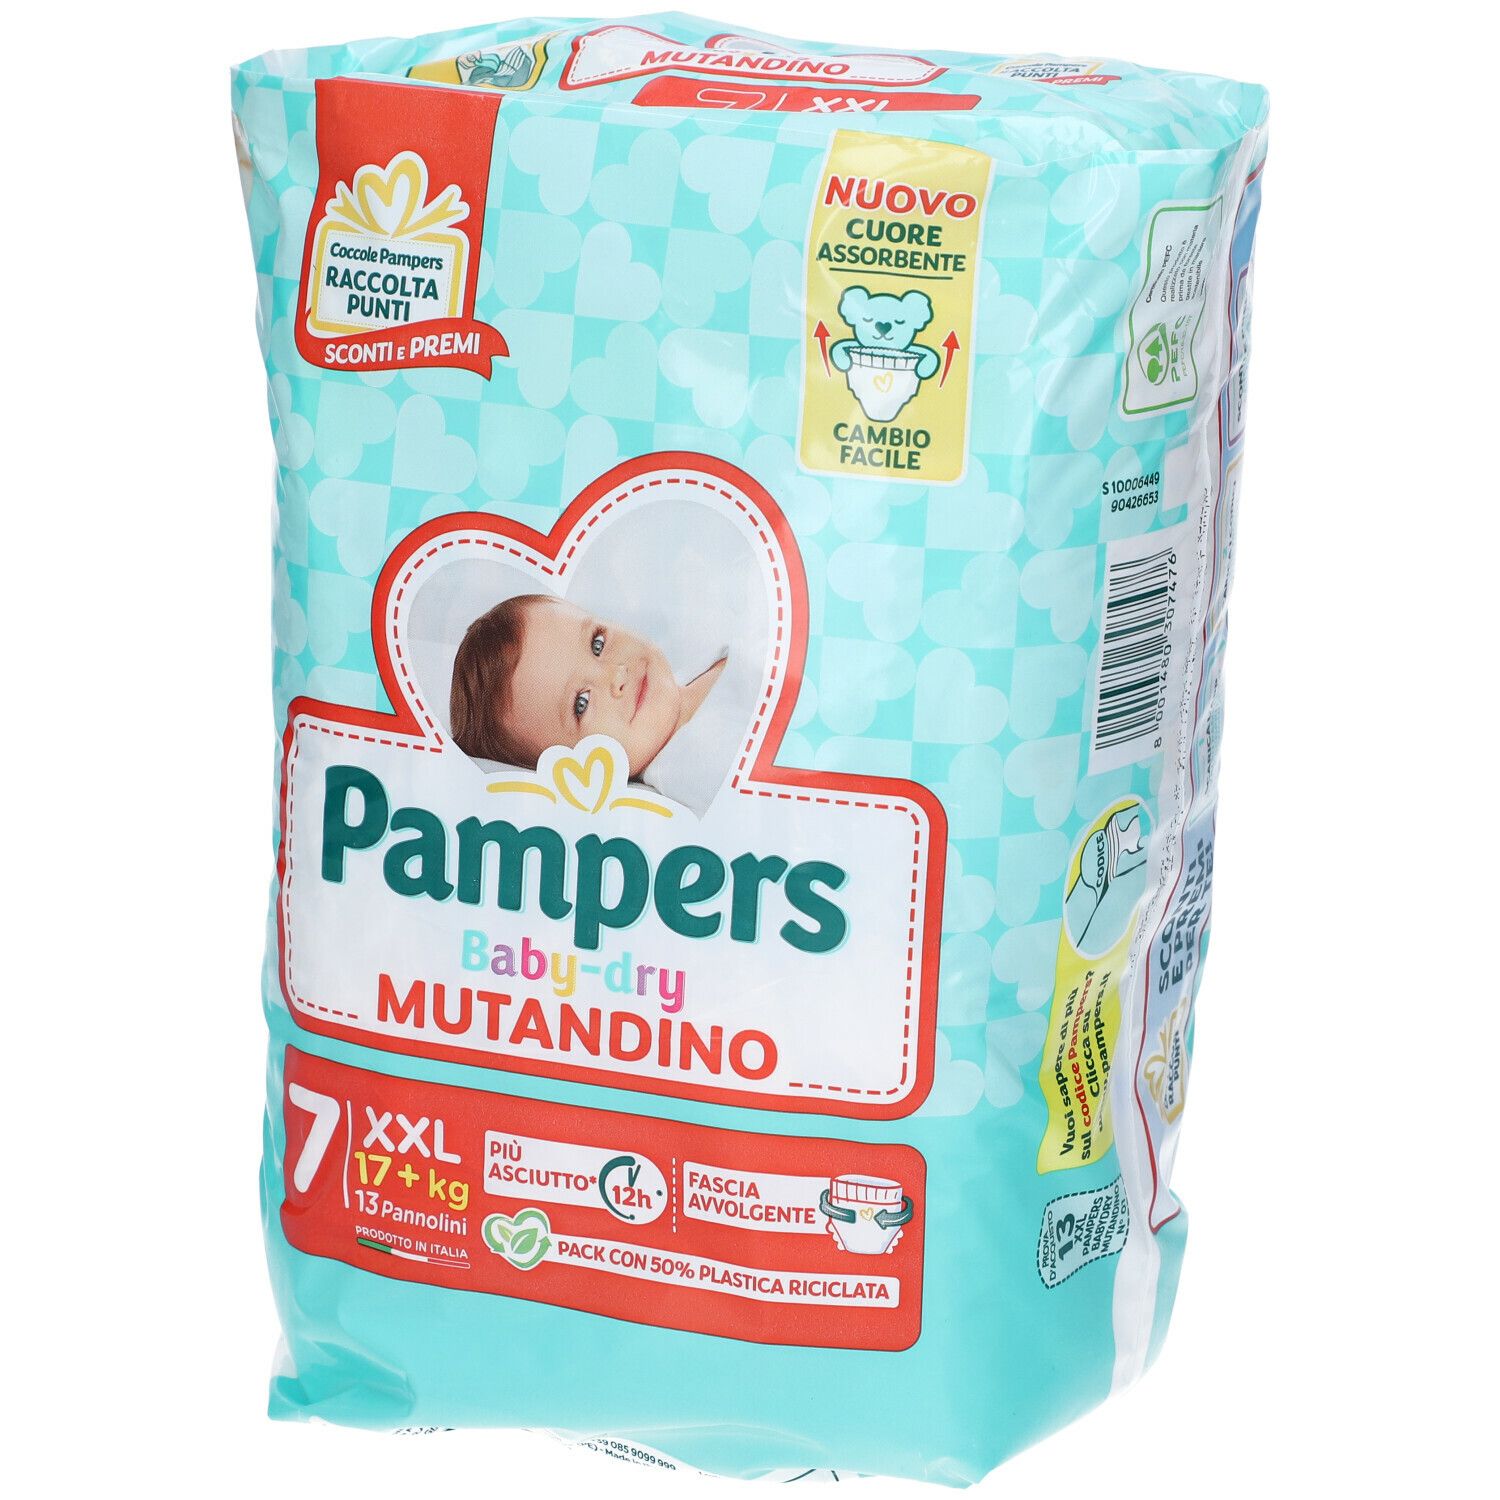 Image of Pampers Baby Dry Mutandino 17 +kg